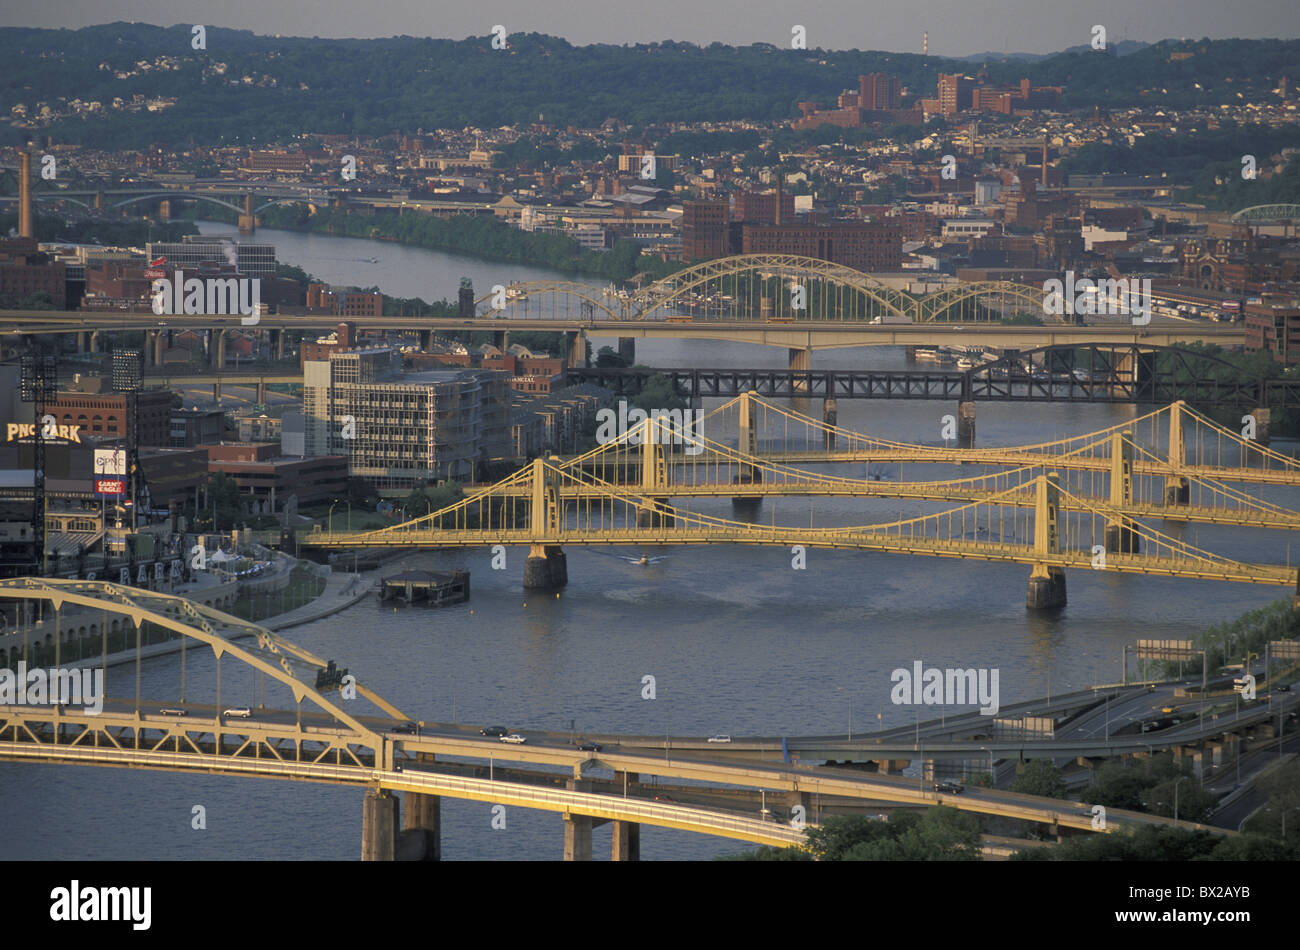 Stadt Allegheny River Brücken Brücken Fluss Pittsburgh Pennsylvania USA Vereinigte Staaten Amerika Stockfoto